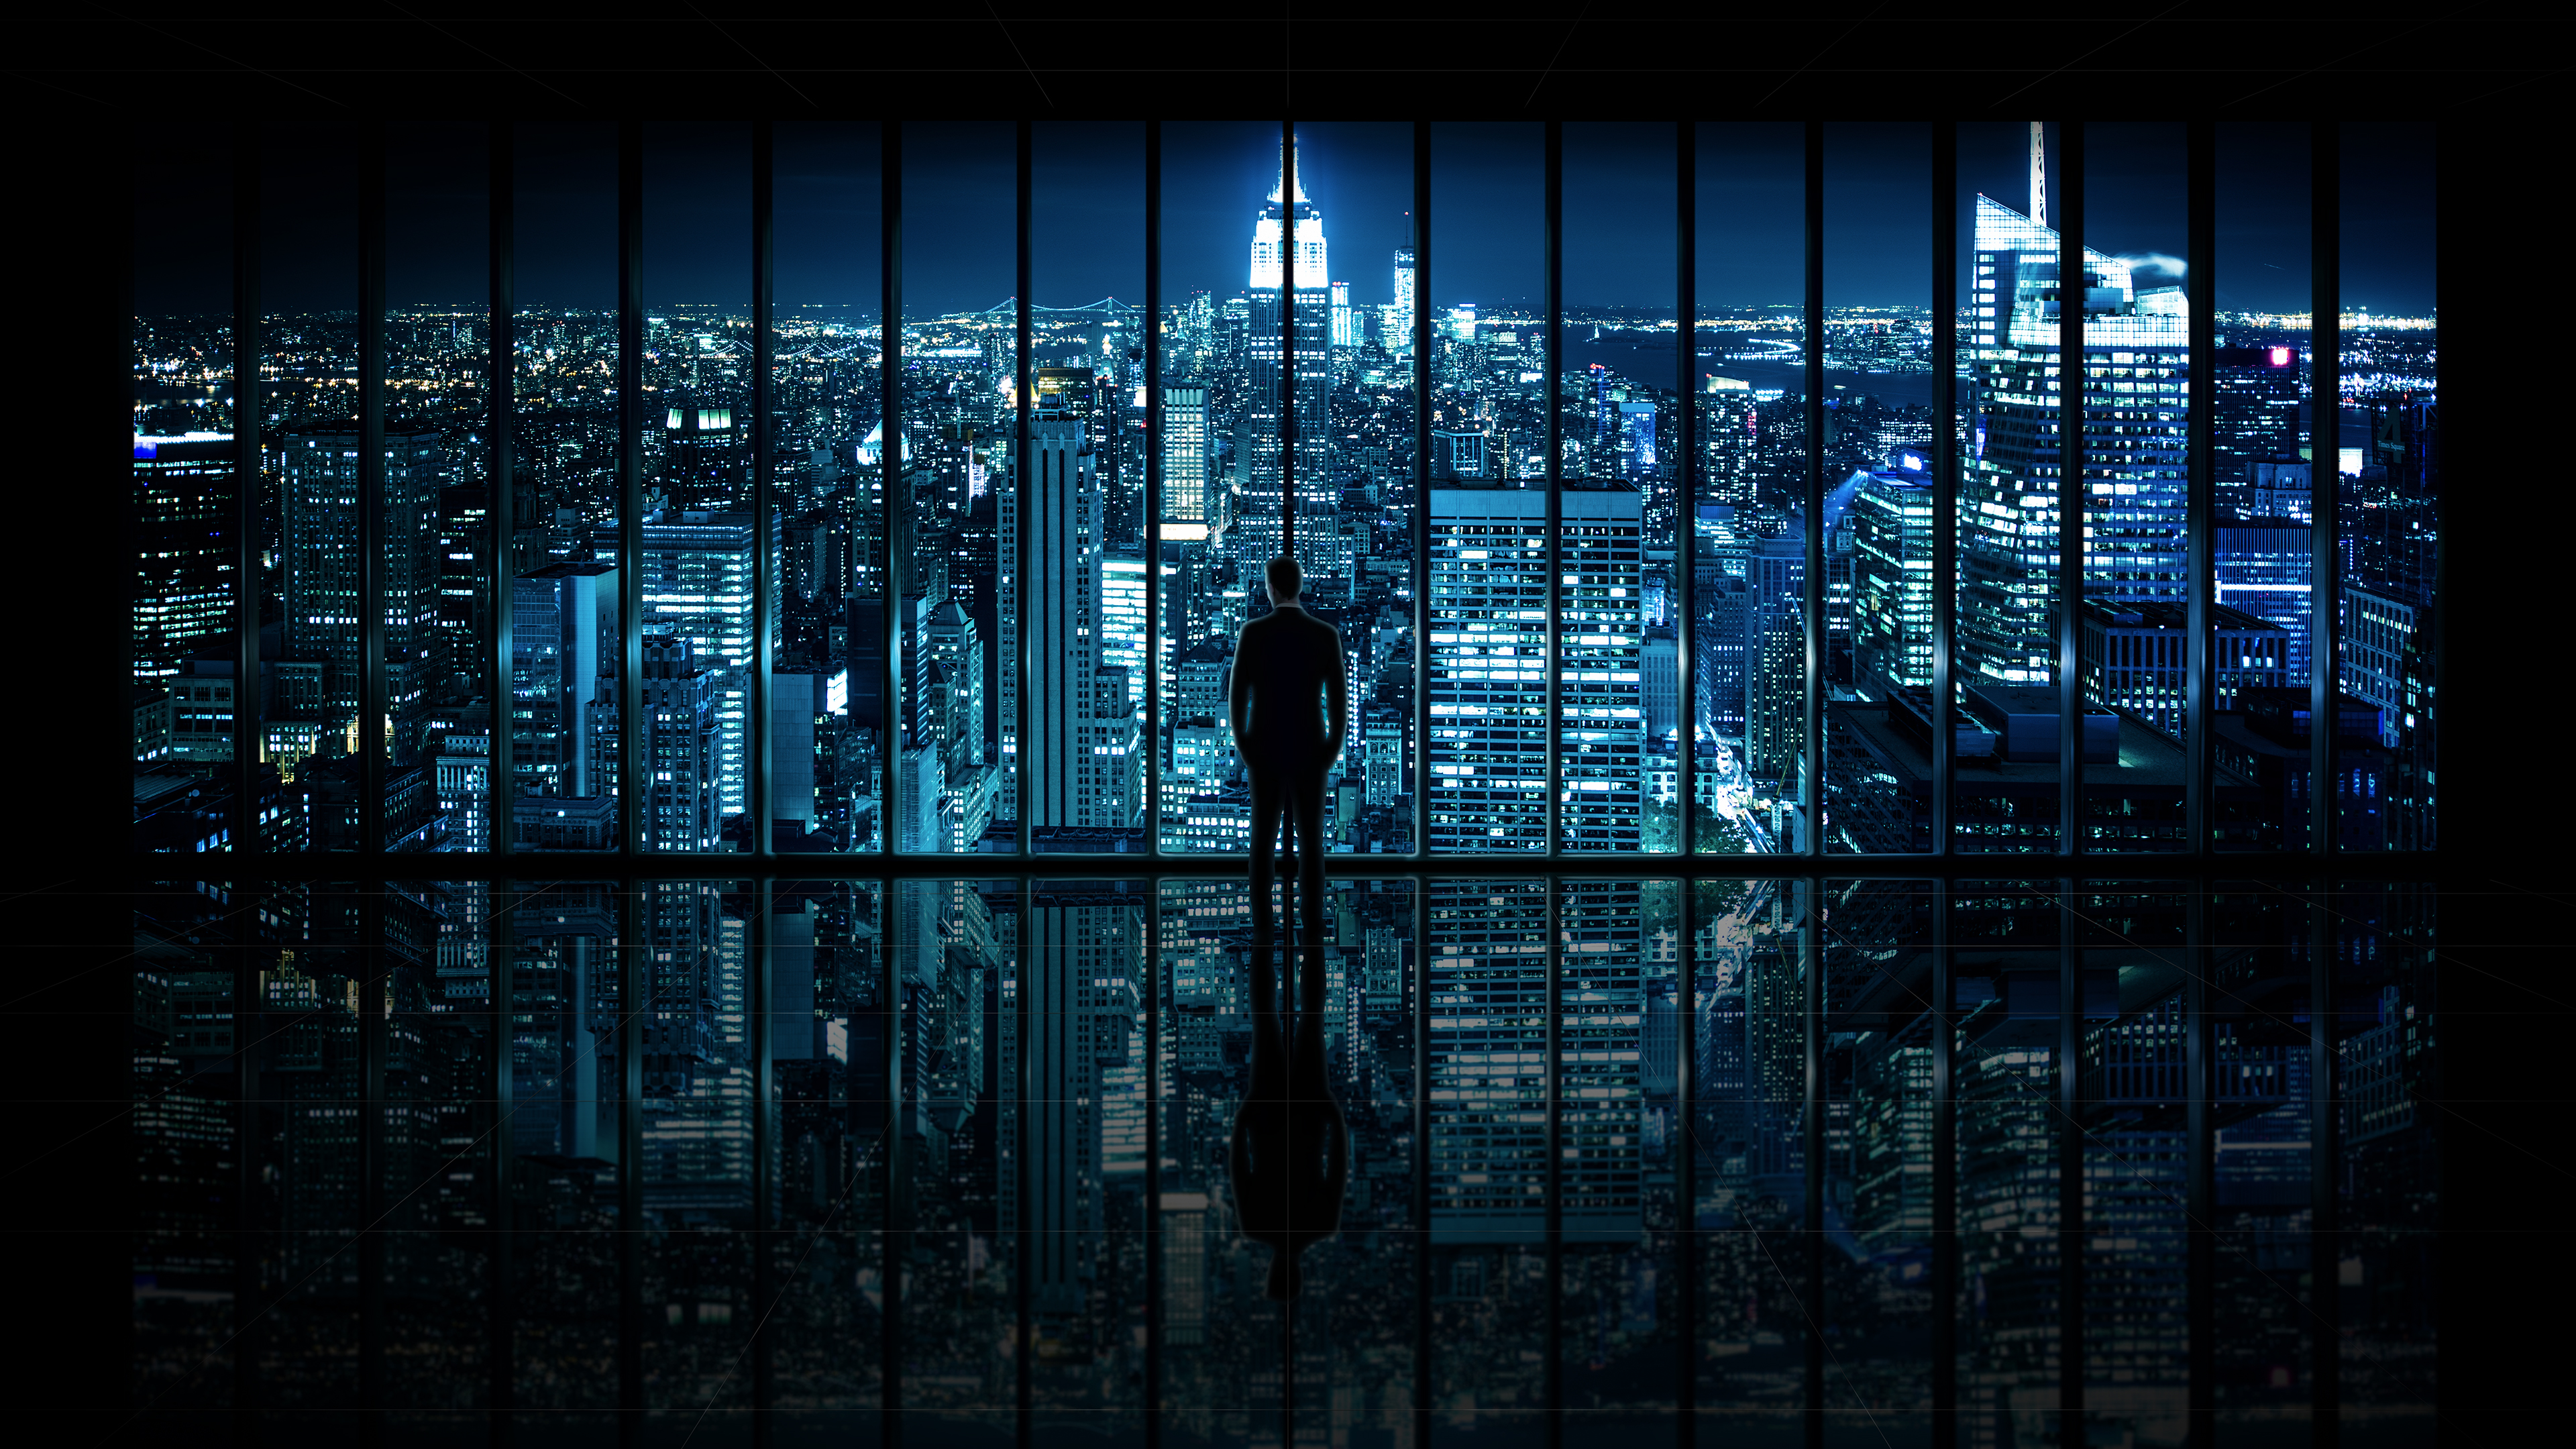 Bạn yêu thích thành phố Gotham và muốn có một tấm hình nền 4K Gotham City Windows 10 đẹp và miễn phí cho máy tính của mình? Hãy đến với chúng tôi và tải ngay những tấm hình đẹp nhất và chất lượng nhất, để bạn có thể thay đổi hình nền cho máy tính của mình một cách dễ dàng và tiện lợi.